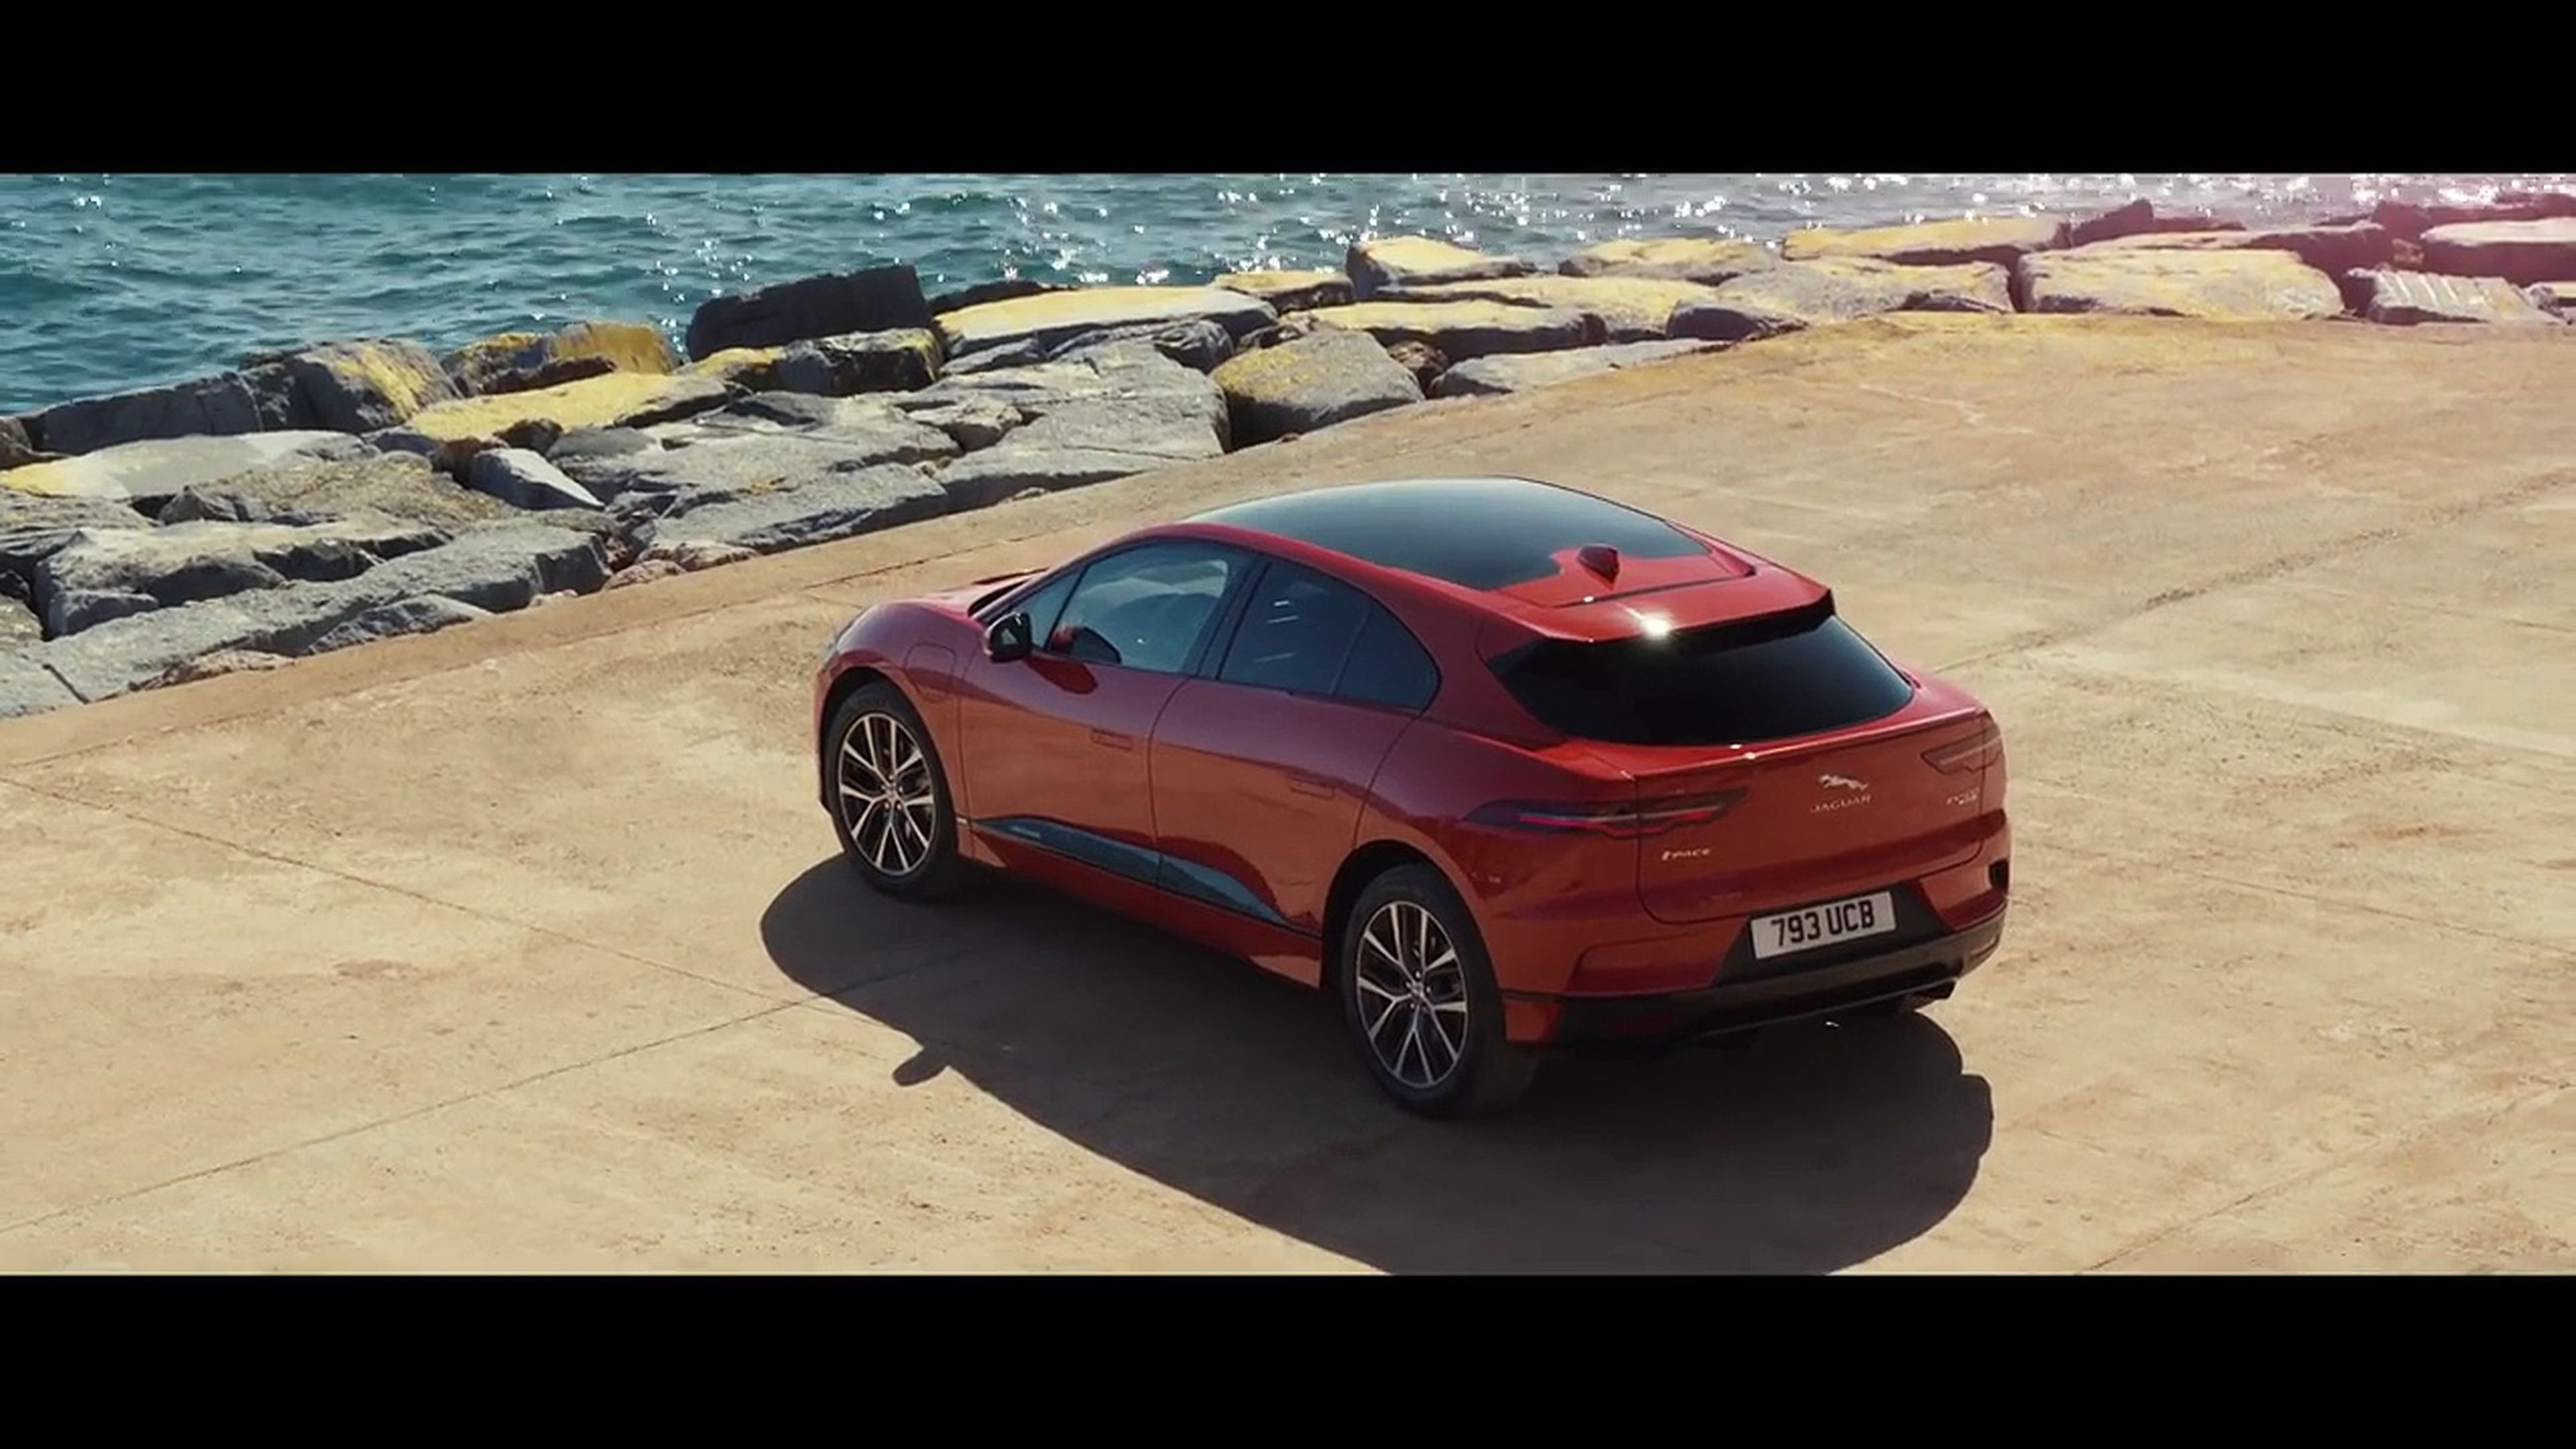 VÍDEO: el Jaguar i-Pace dándolo todo, ¿el eléctrico más polifacético? [TG]